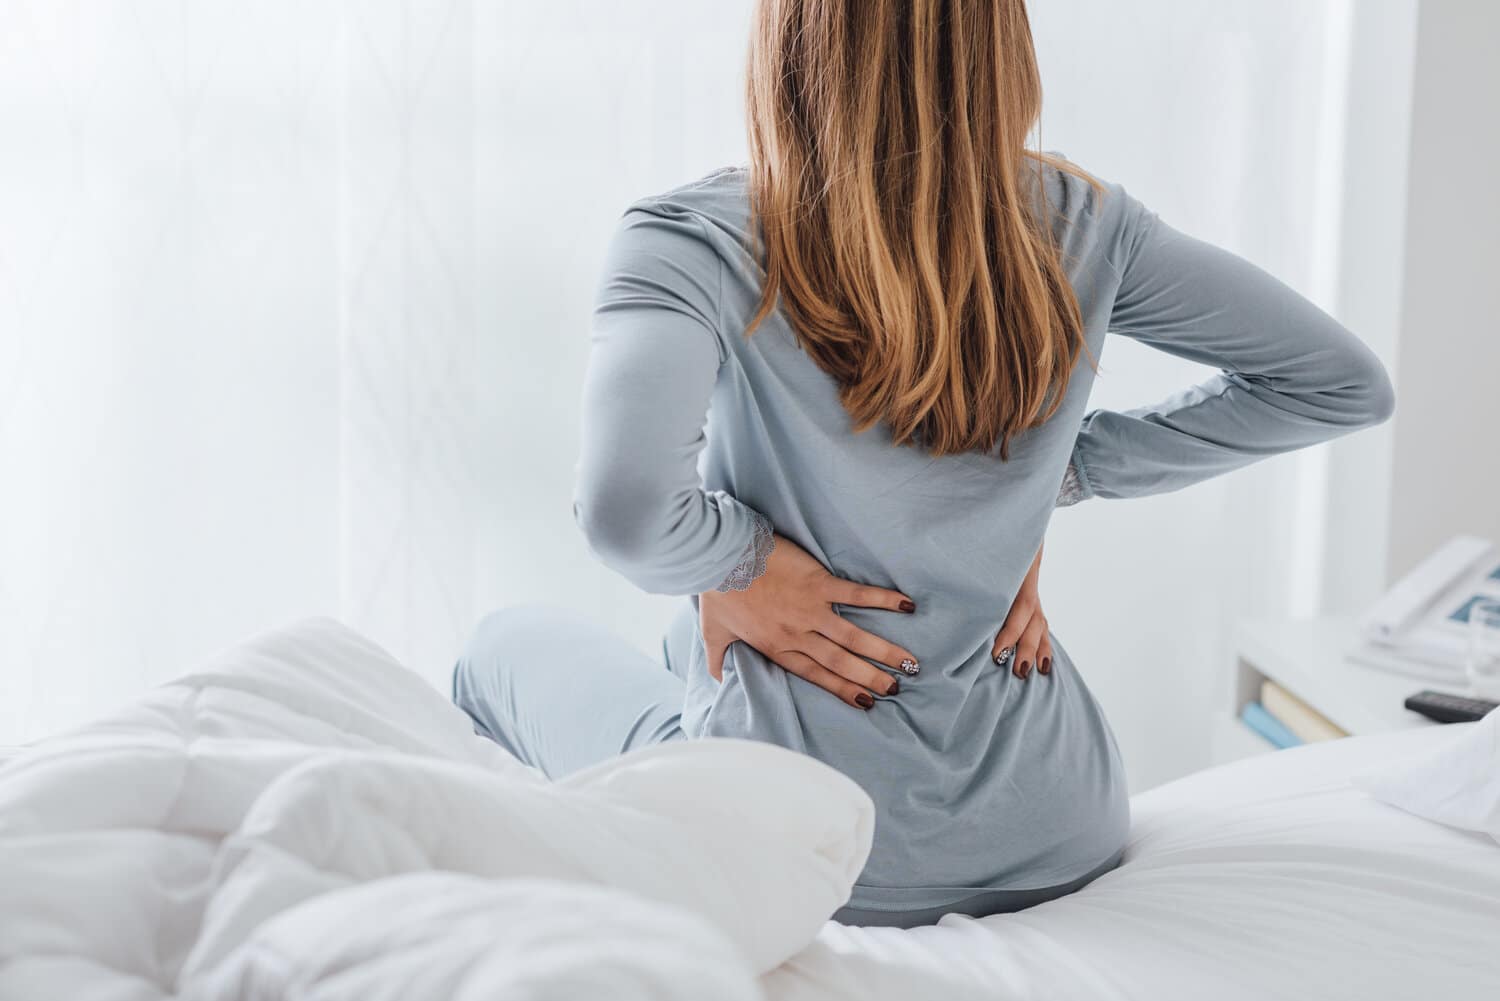 firm mattress cause back pain